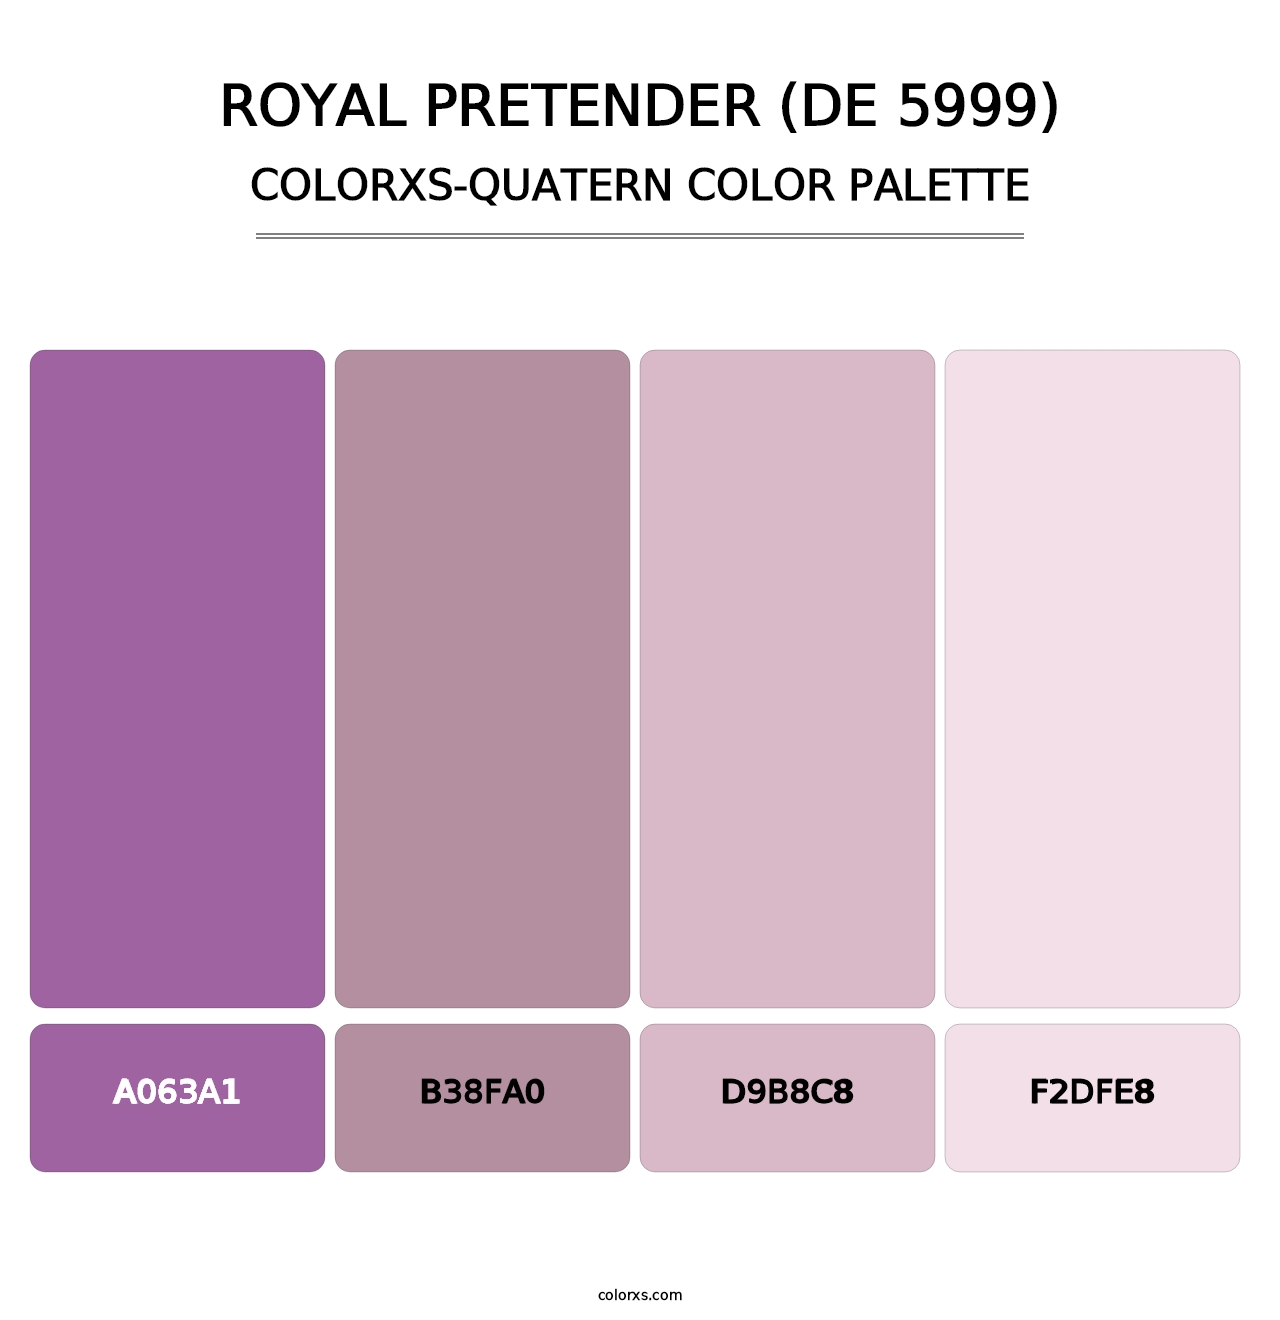 Royal Pretender (DE 5999) - Colorxs Quatern Palette